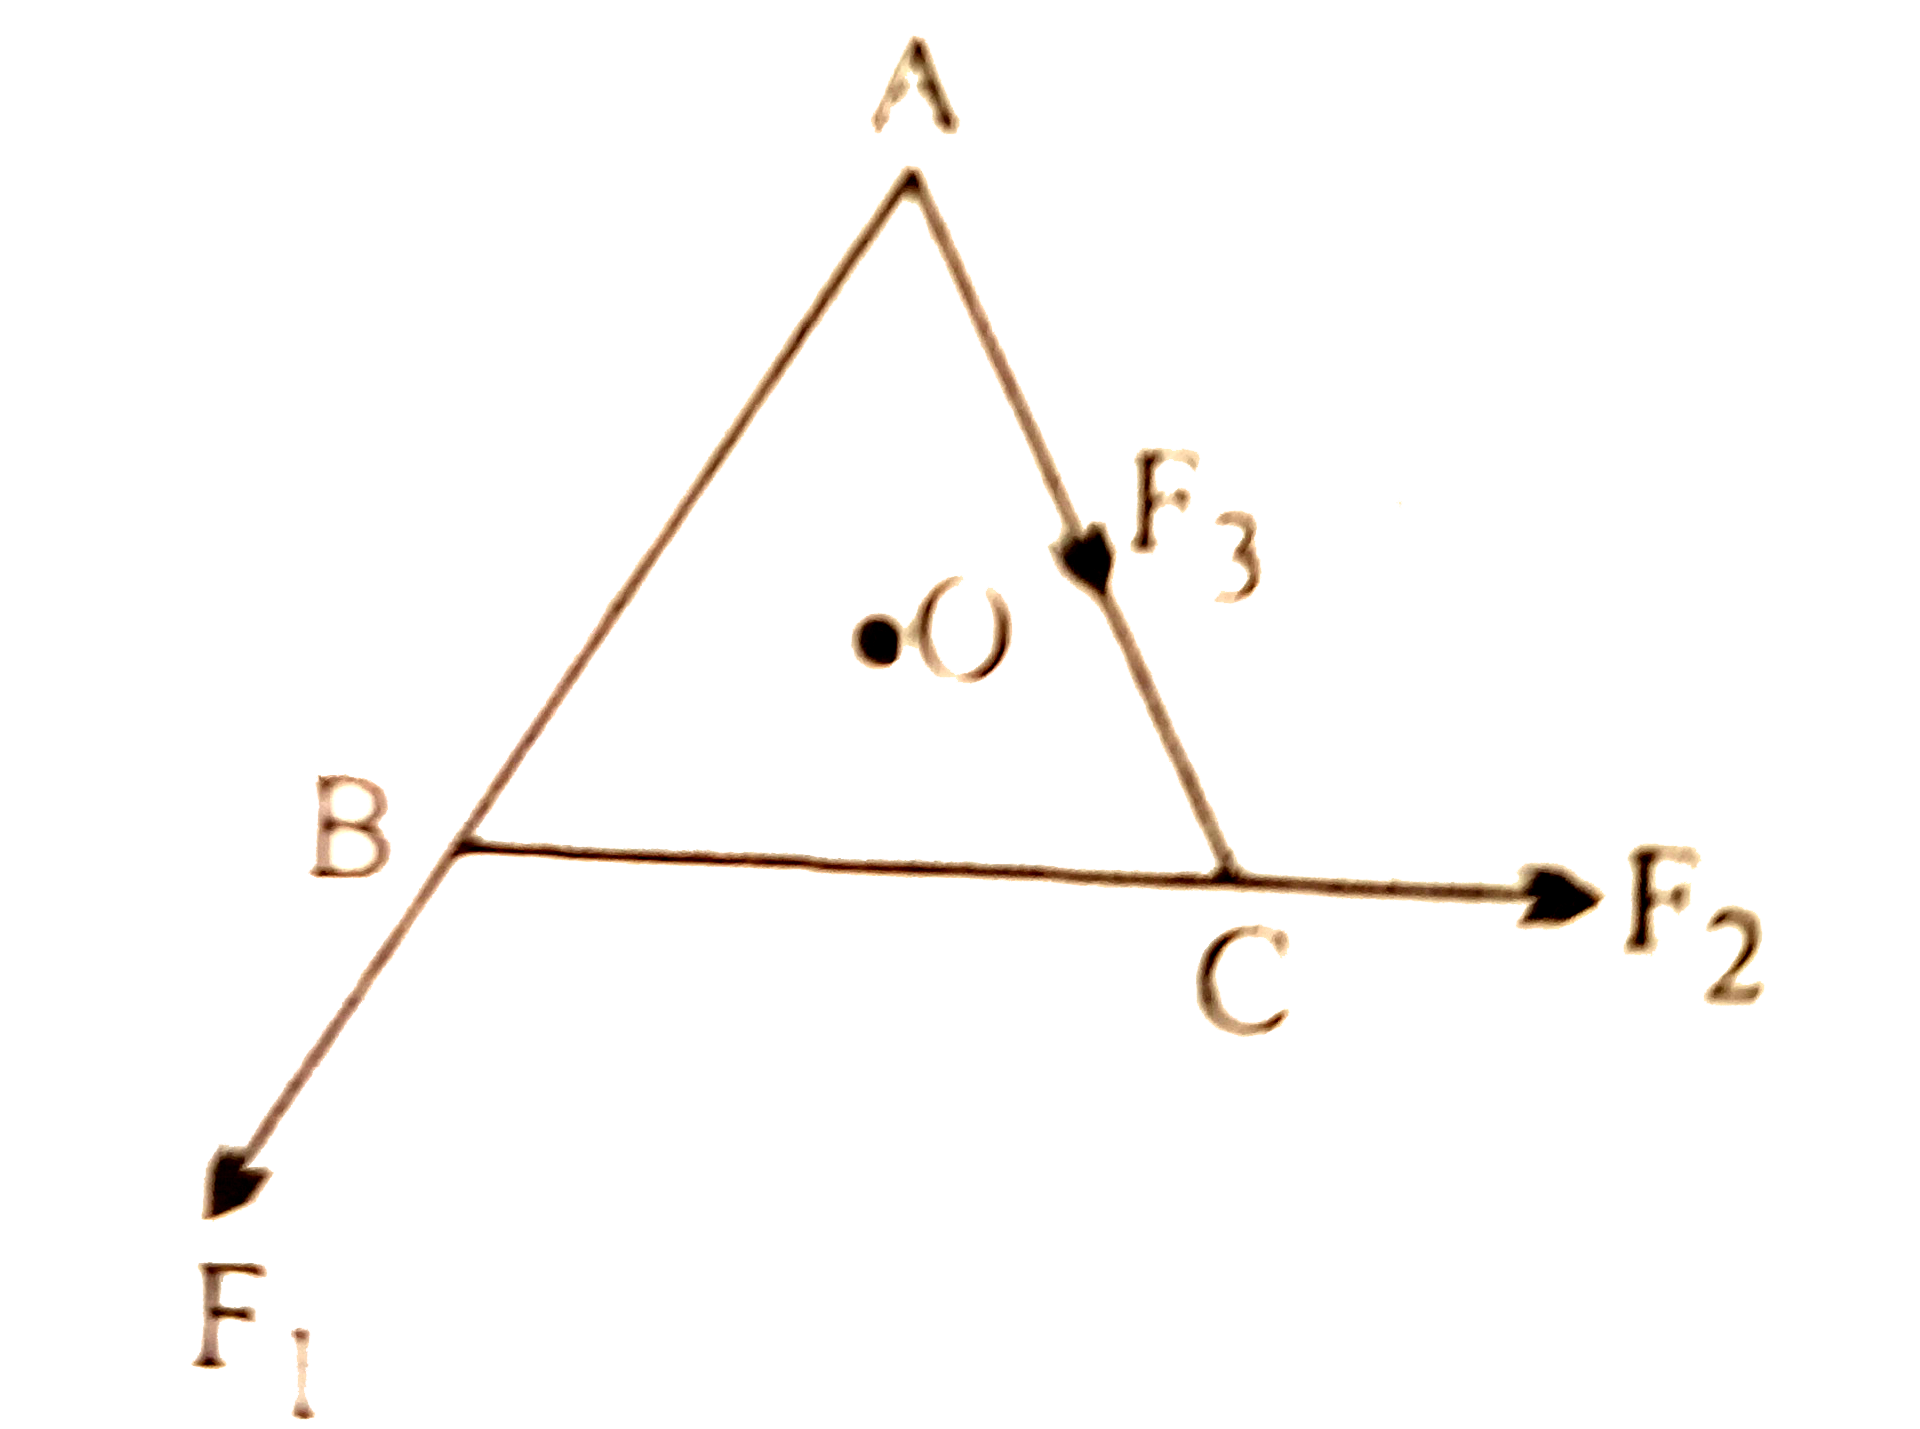 ABC एक समबाहु त्रिभुज है जिसका केंद्र O है, vec(F(1)), vec(F(2)) तथा vec(F(3)) क्रमश AB, BC  तथा AC दिशा में लगे बल हैं । यदि O के परितः कुल बल आघूर्ण शून्य हो, तो vec(F(3)) का मान होगा-